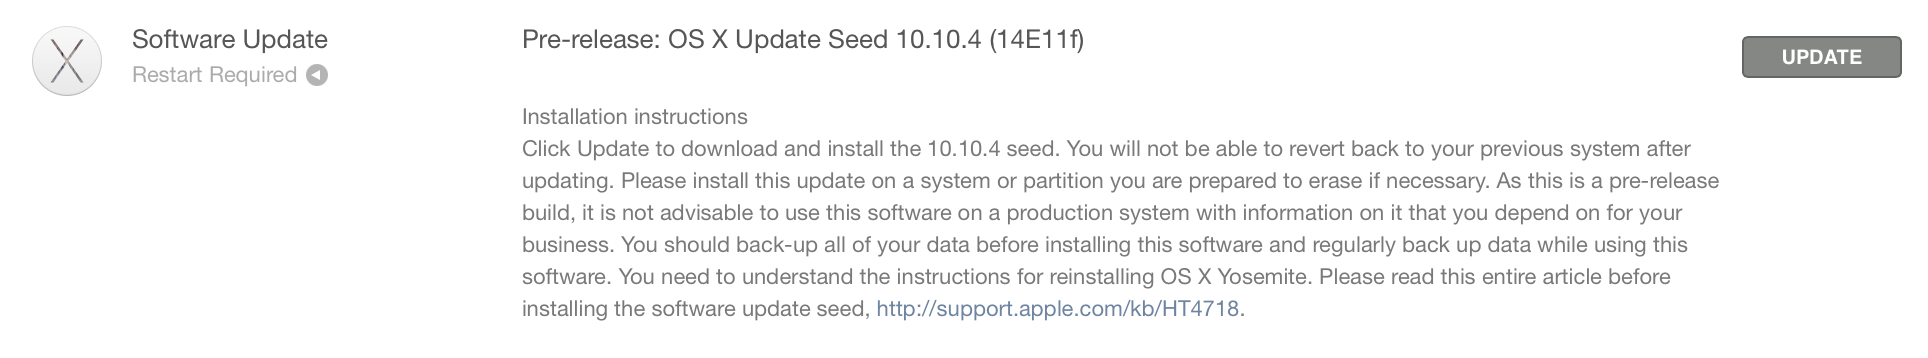 Versión beta de OS X 10.10.4